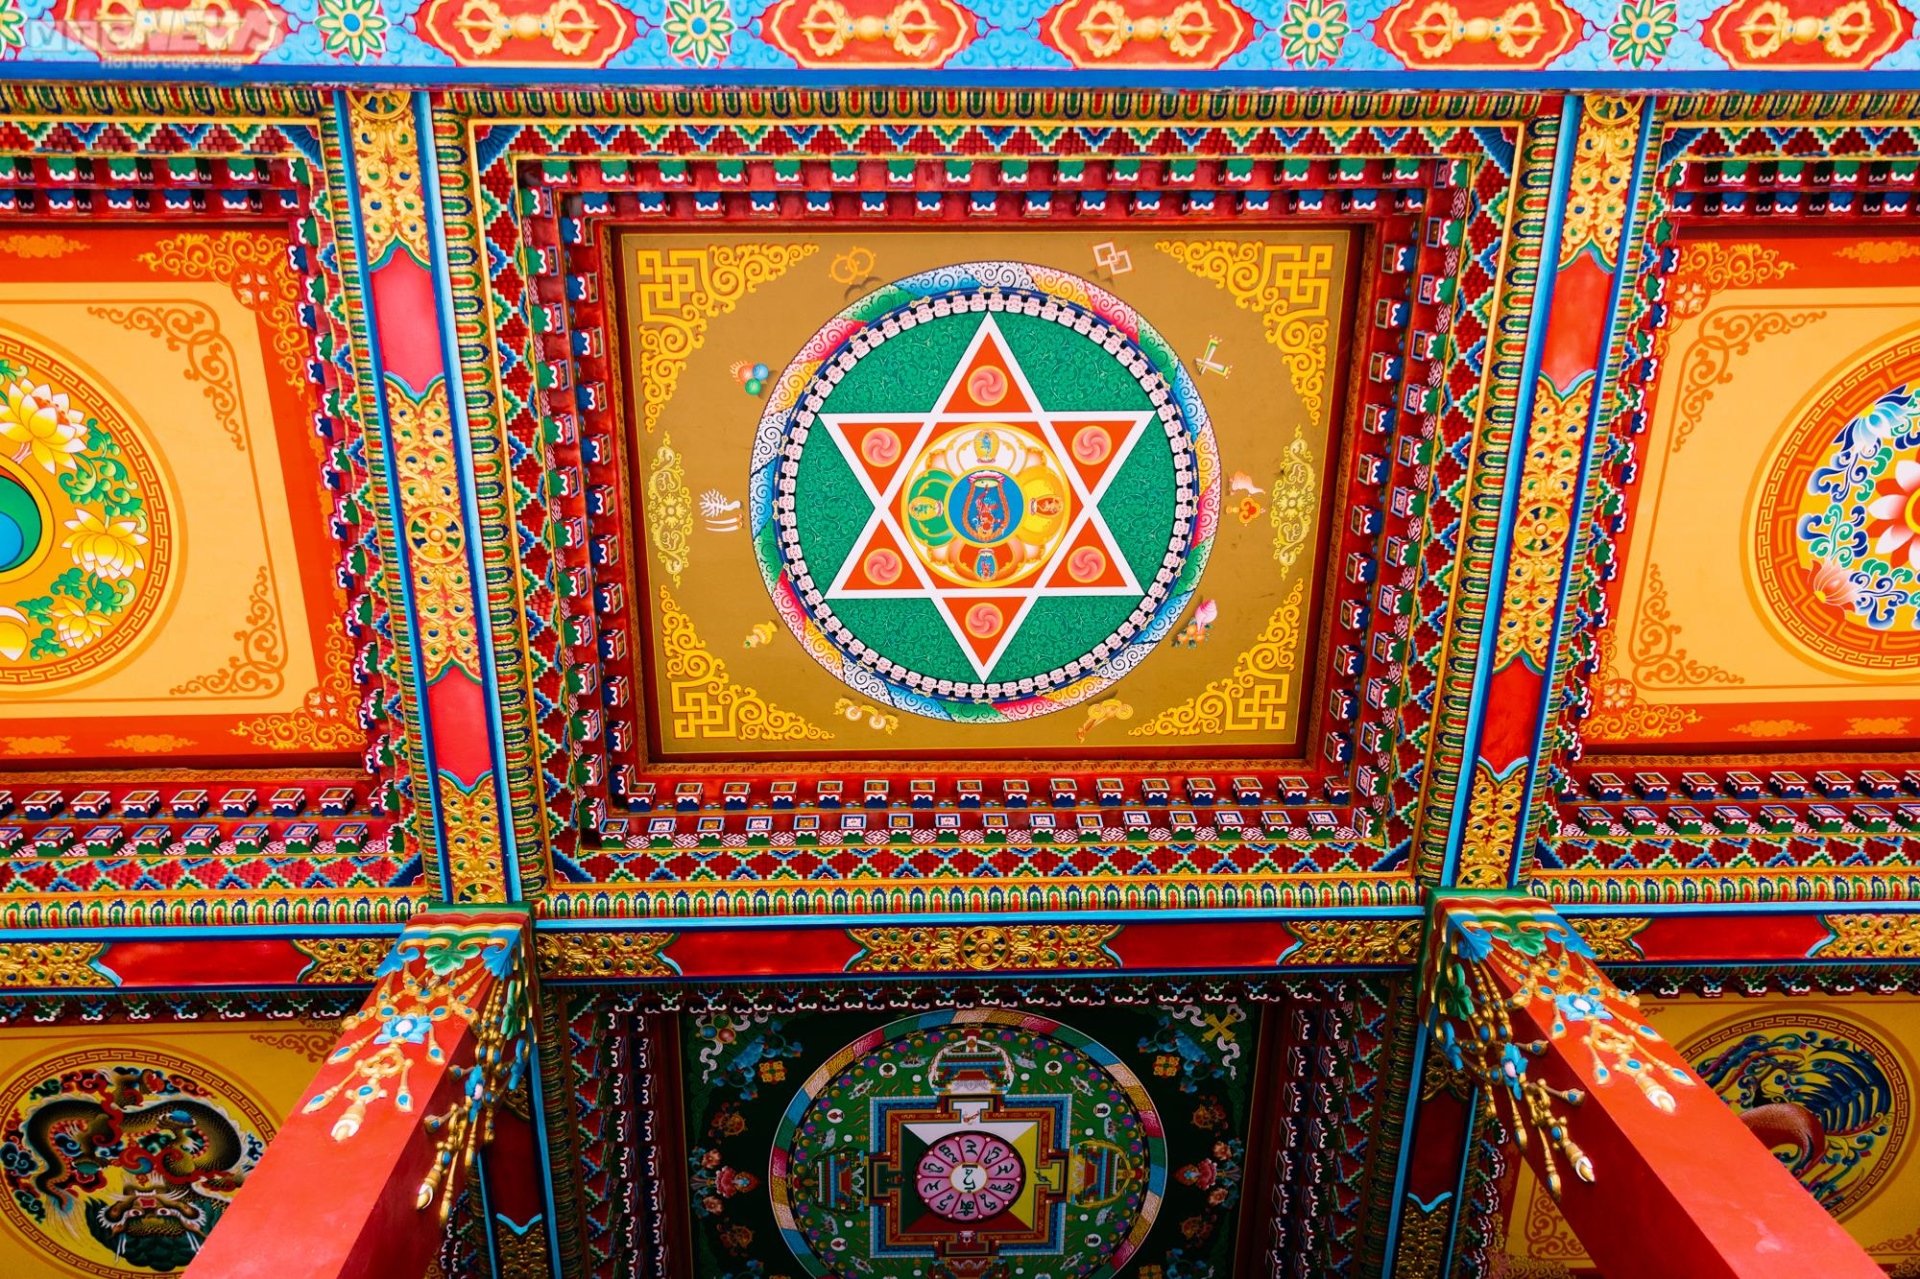 Chiêm ngưỡng ngôi chùa Tây Tạng 600 năm tuổi độc nhất tại Hà Nội - 16